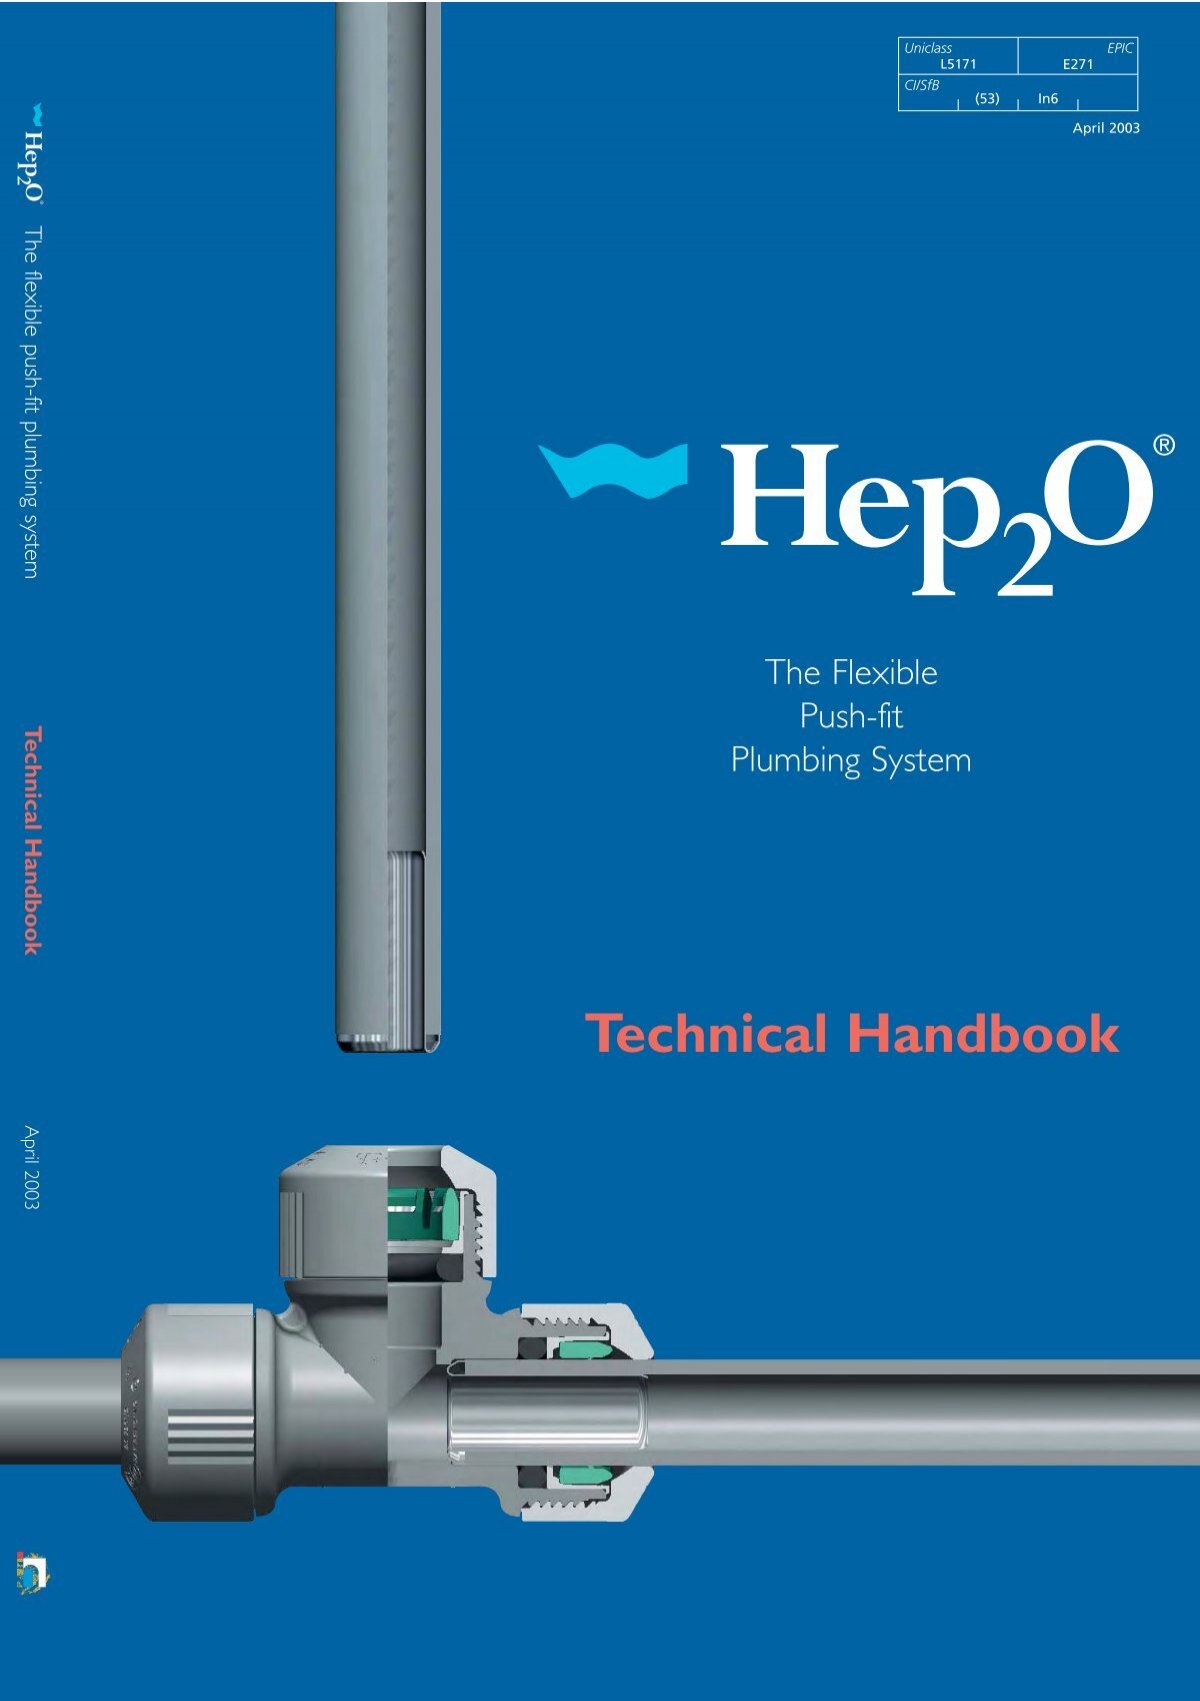 Hep20 Technical Handbook